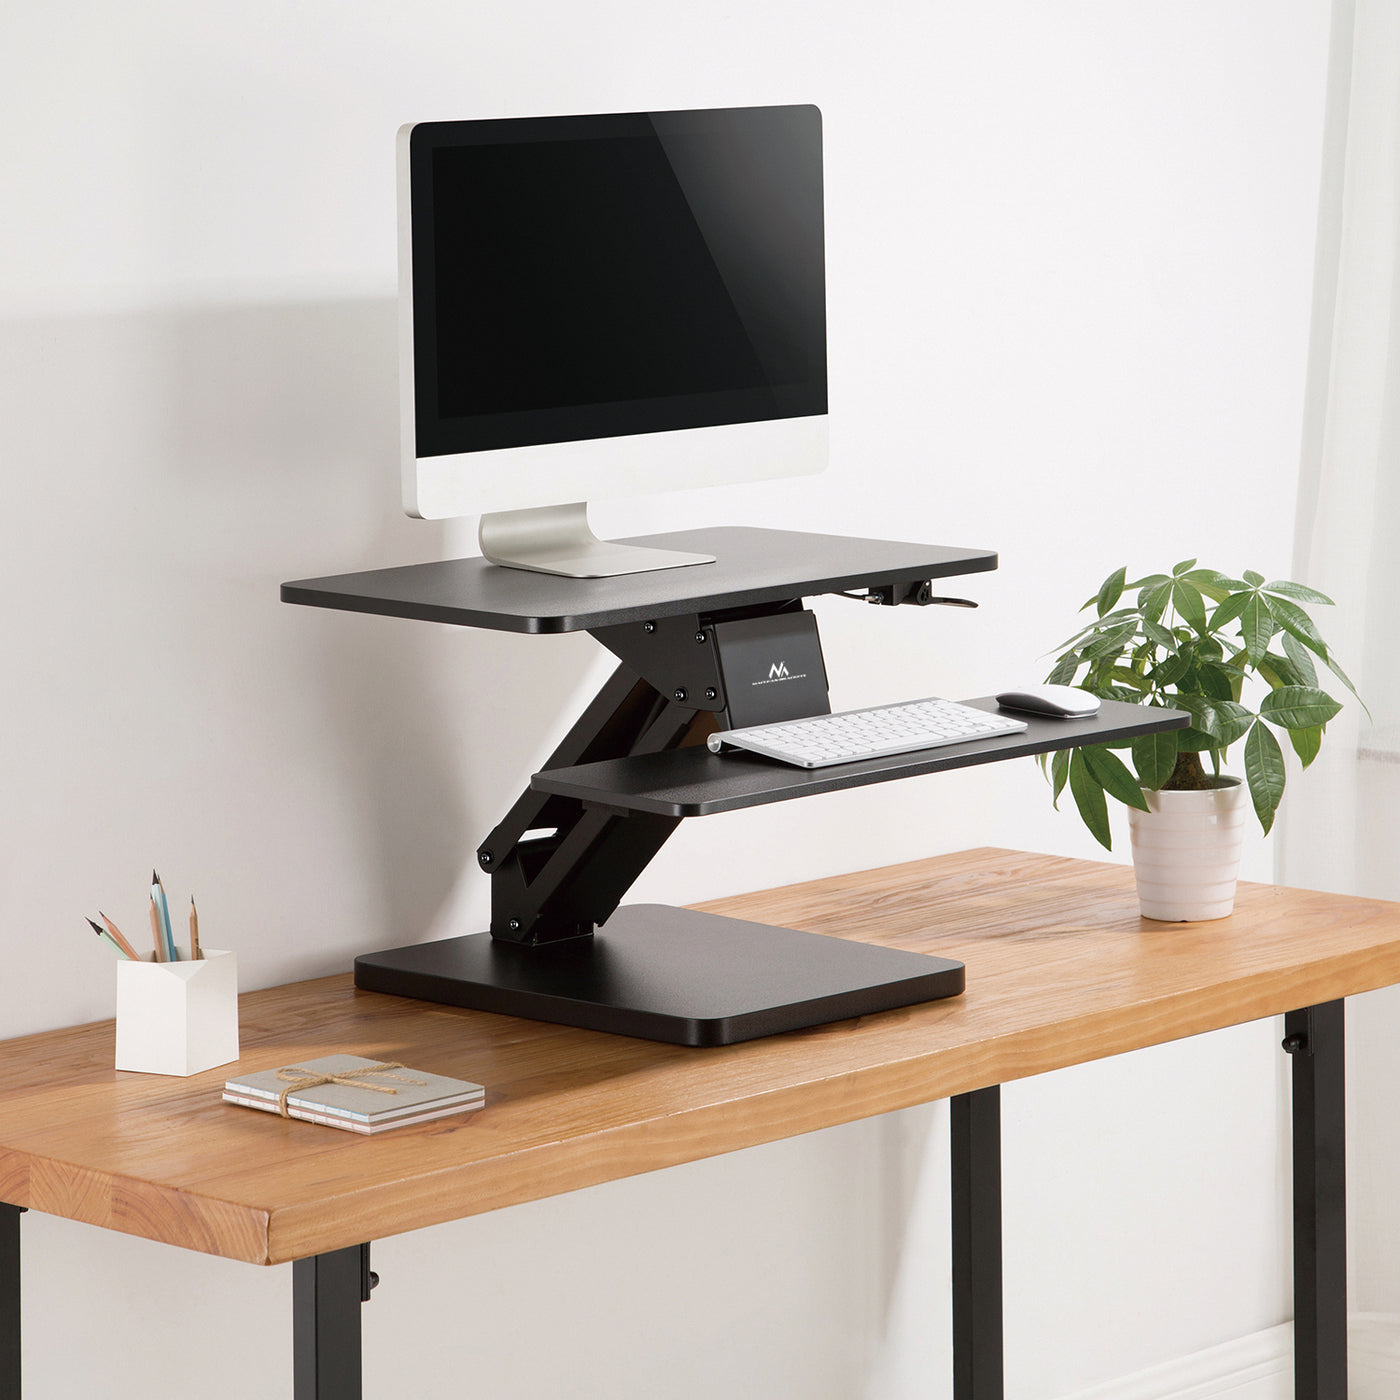 Maclean MC-882 Tischständer für Laptop, Monitor, Tastatur, Maus, für sitzende und stehende Arbeitsposition Ergonomischer Ständer